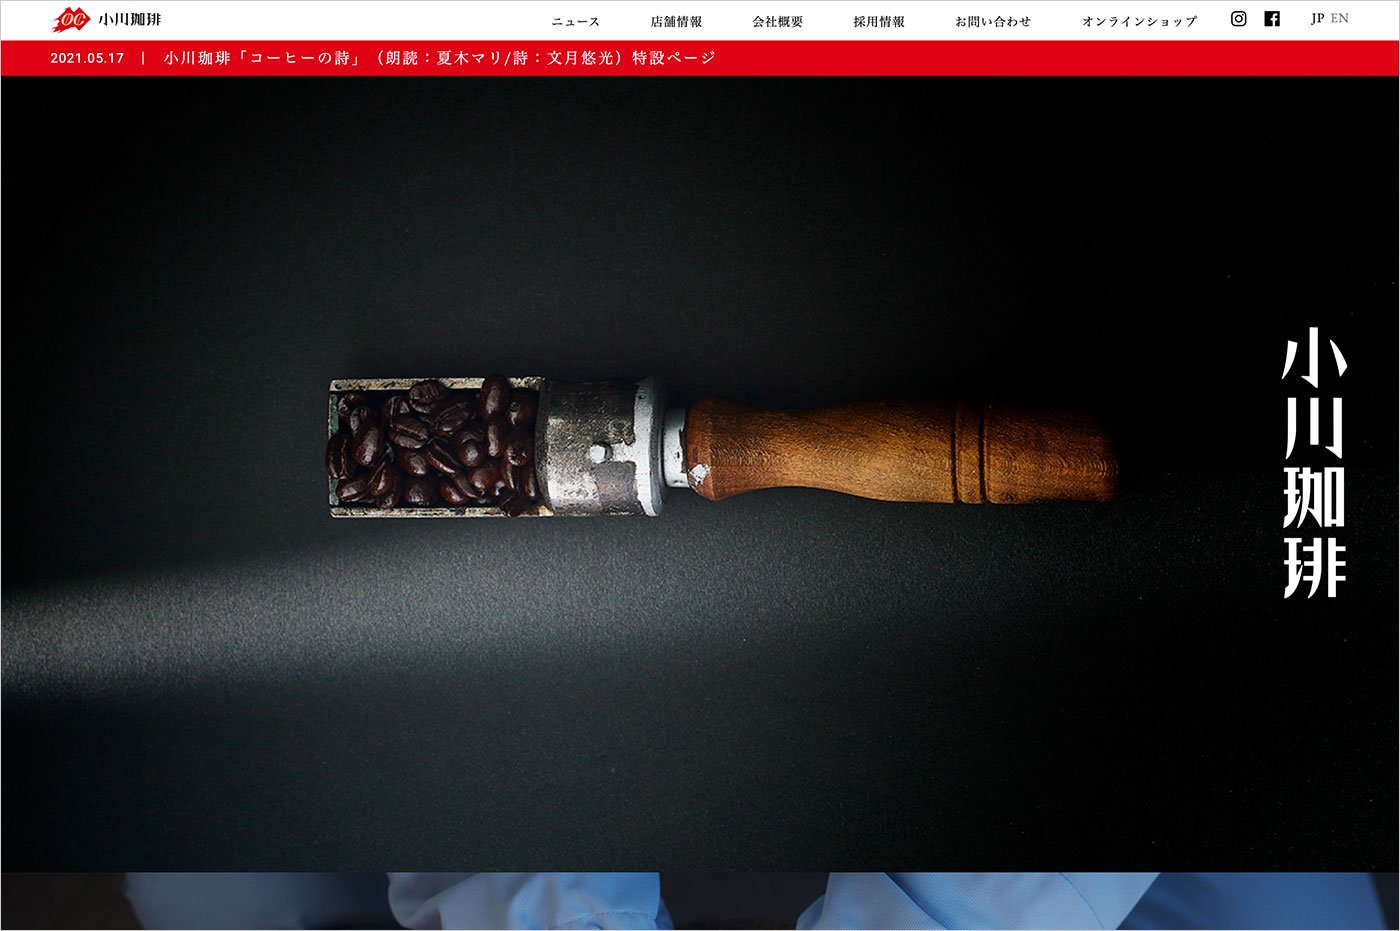 小川珈琲ウェブサイトの画面キャプチャ画像